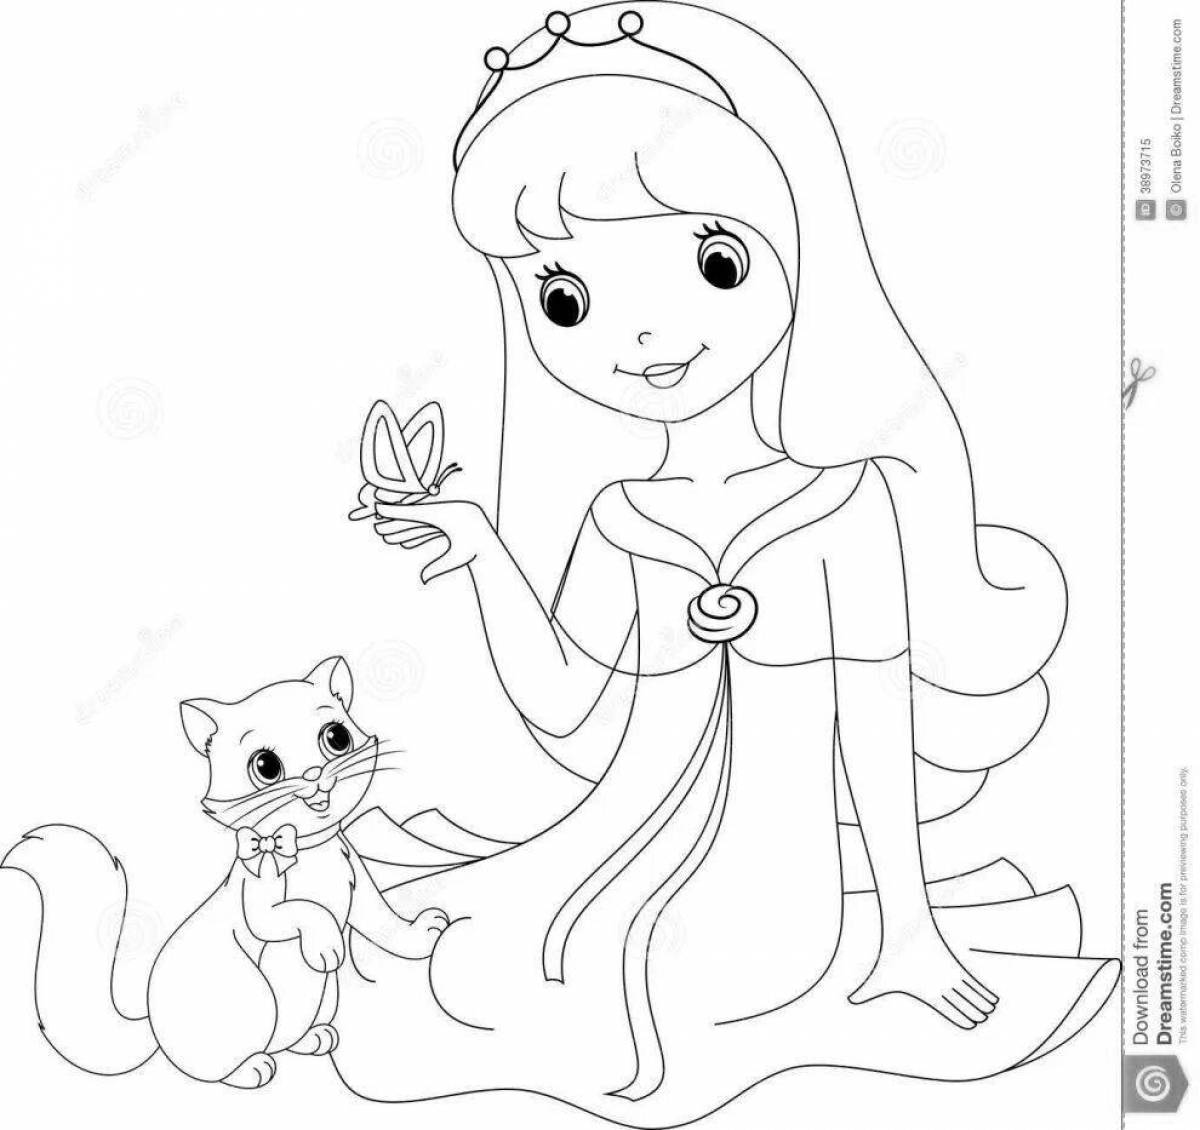 Оживленная раскраска принцесса с котенком